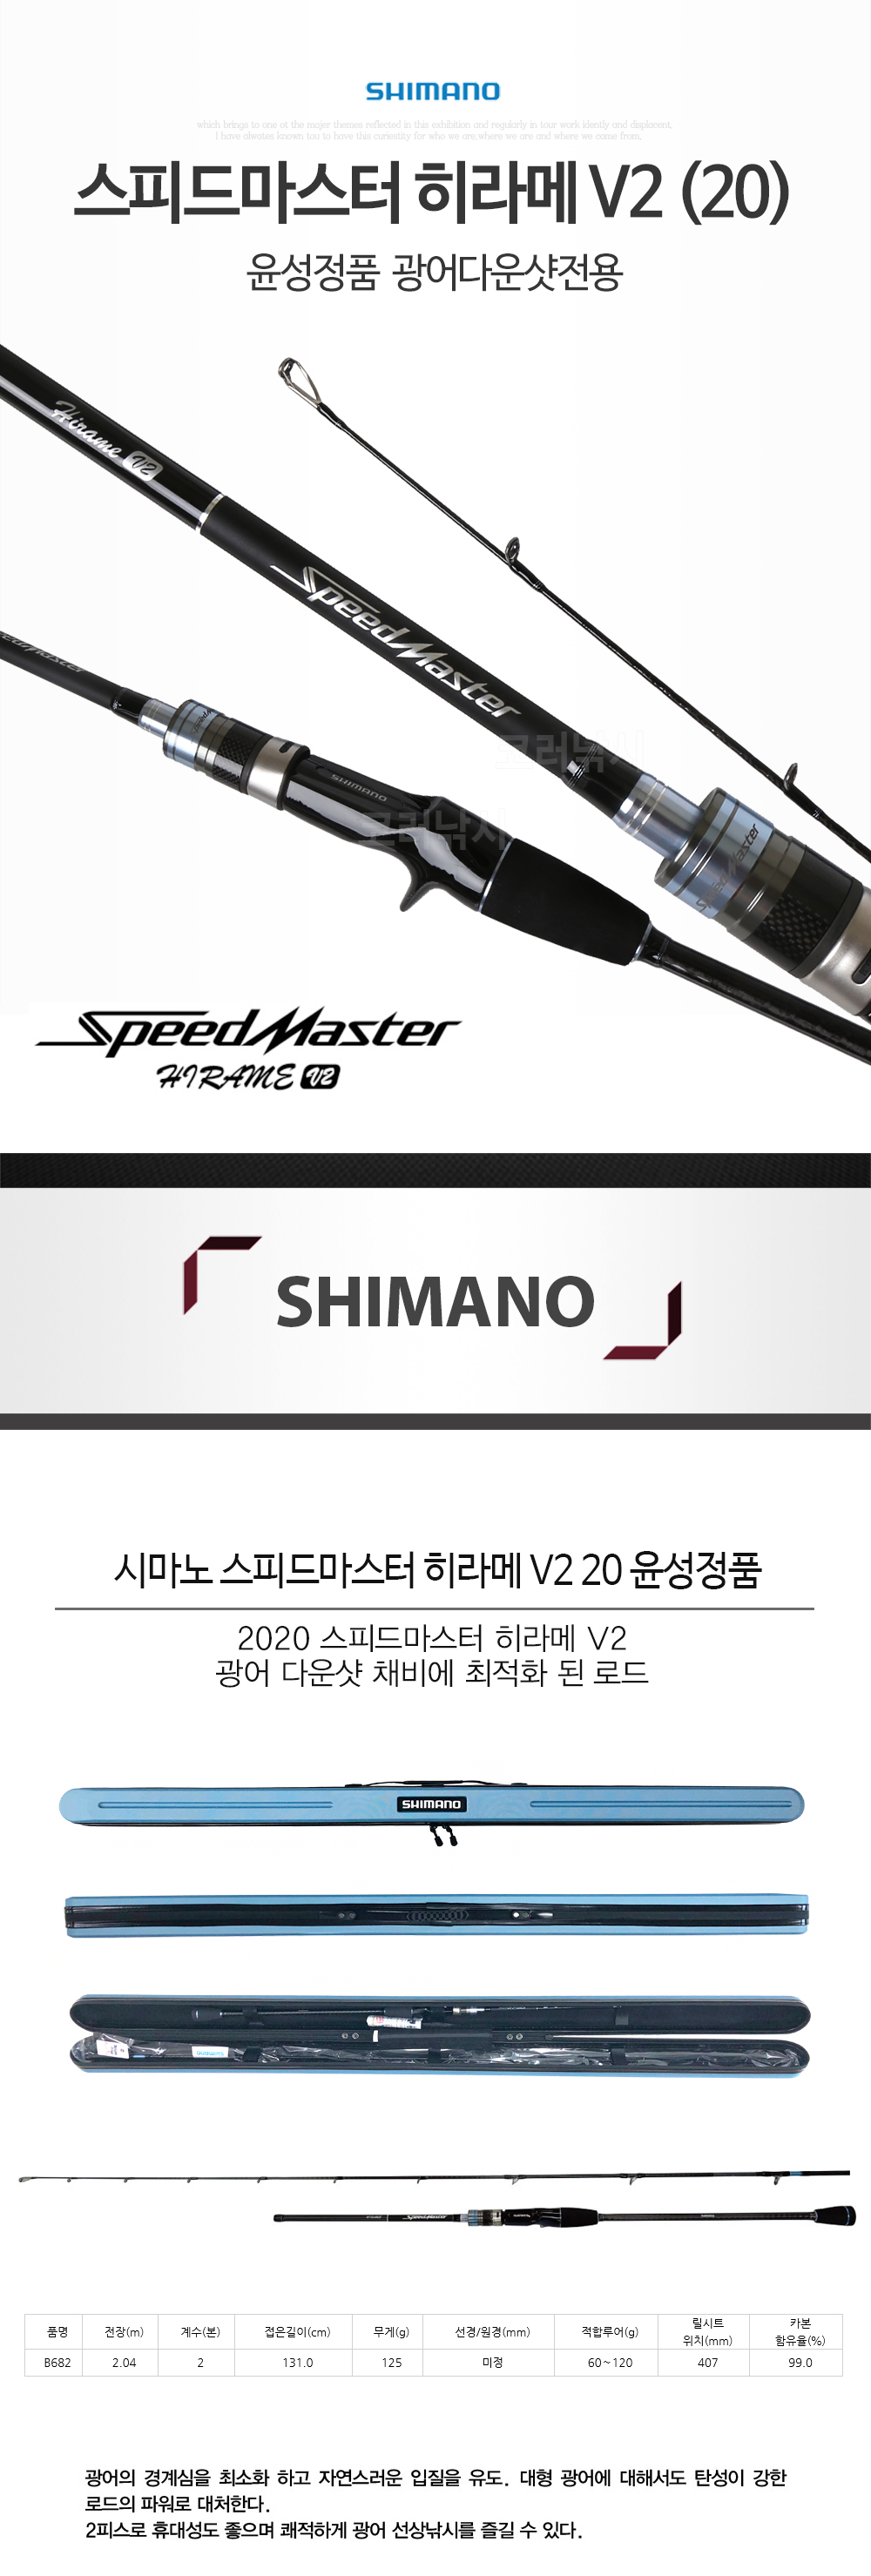 시마노 스피드마스터 히라메 V2 20 윤성정품 광어다운샷전용 광어다운샷낚시대 광다낚시대 선상광어낚시대 선상광어루어대